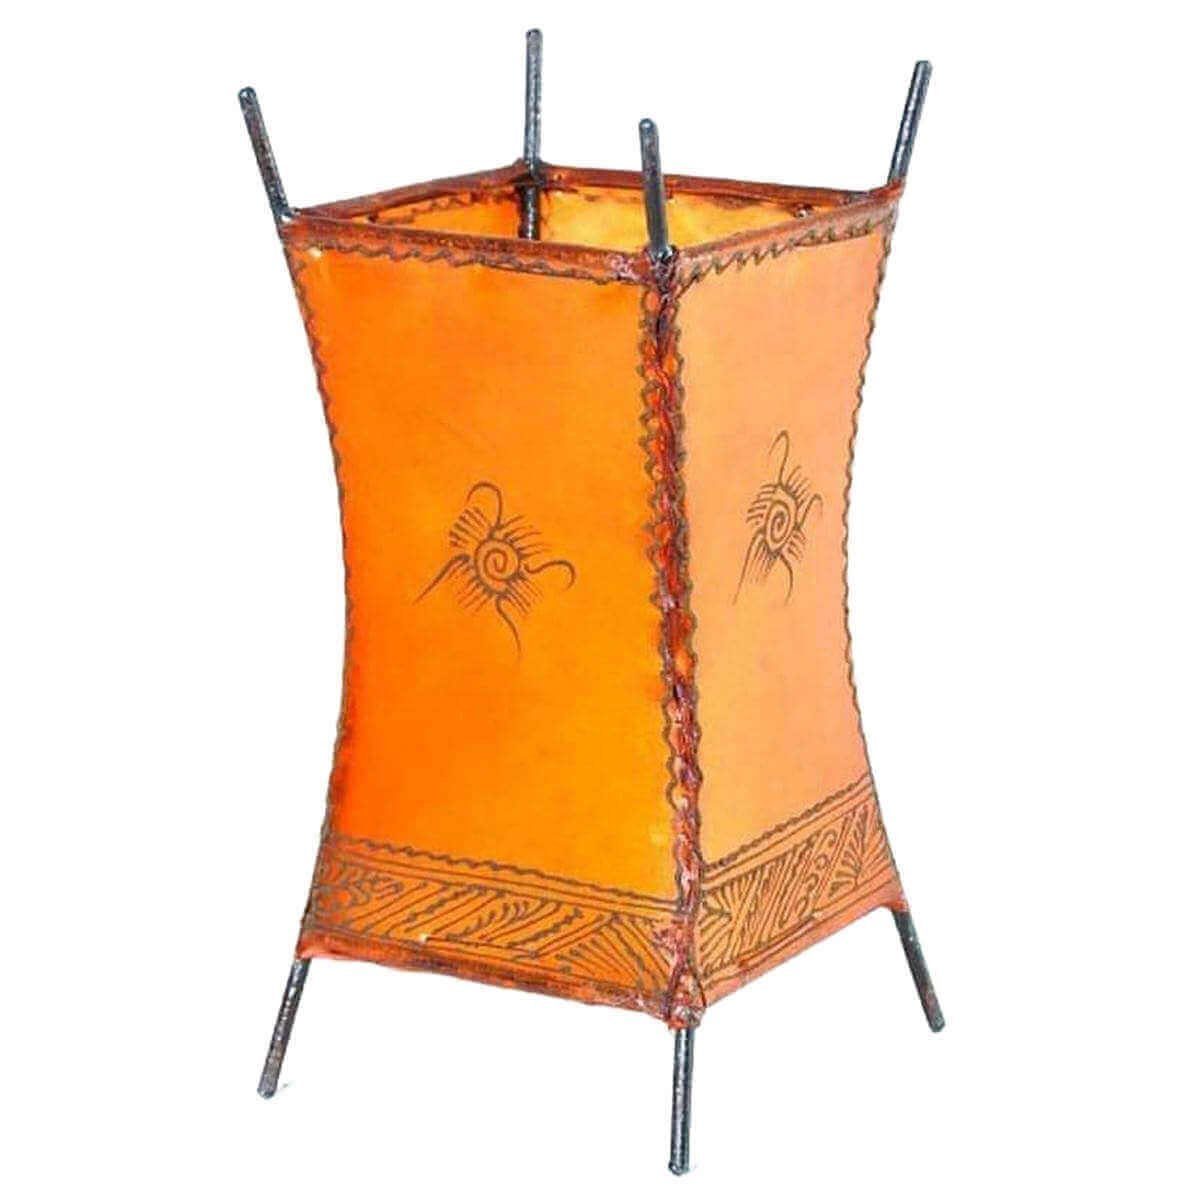 SIMANDRA Stehlampe Carree Sonne, Ambilight, ohne Leuchtmittel, Warmweiß, marokkanische Lederlampe Orange